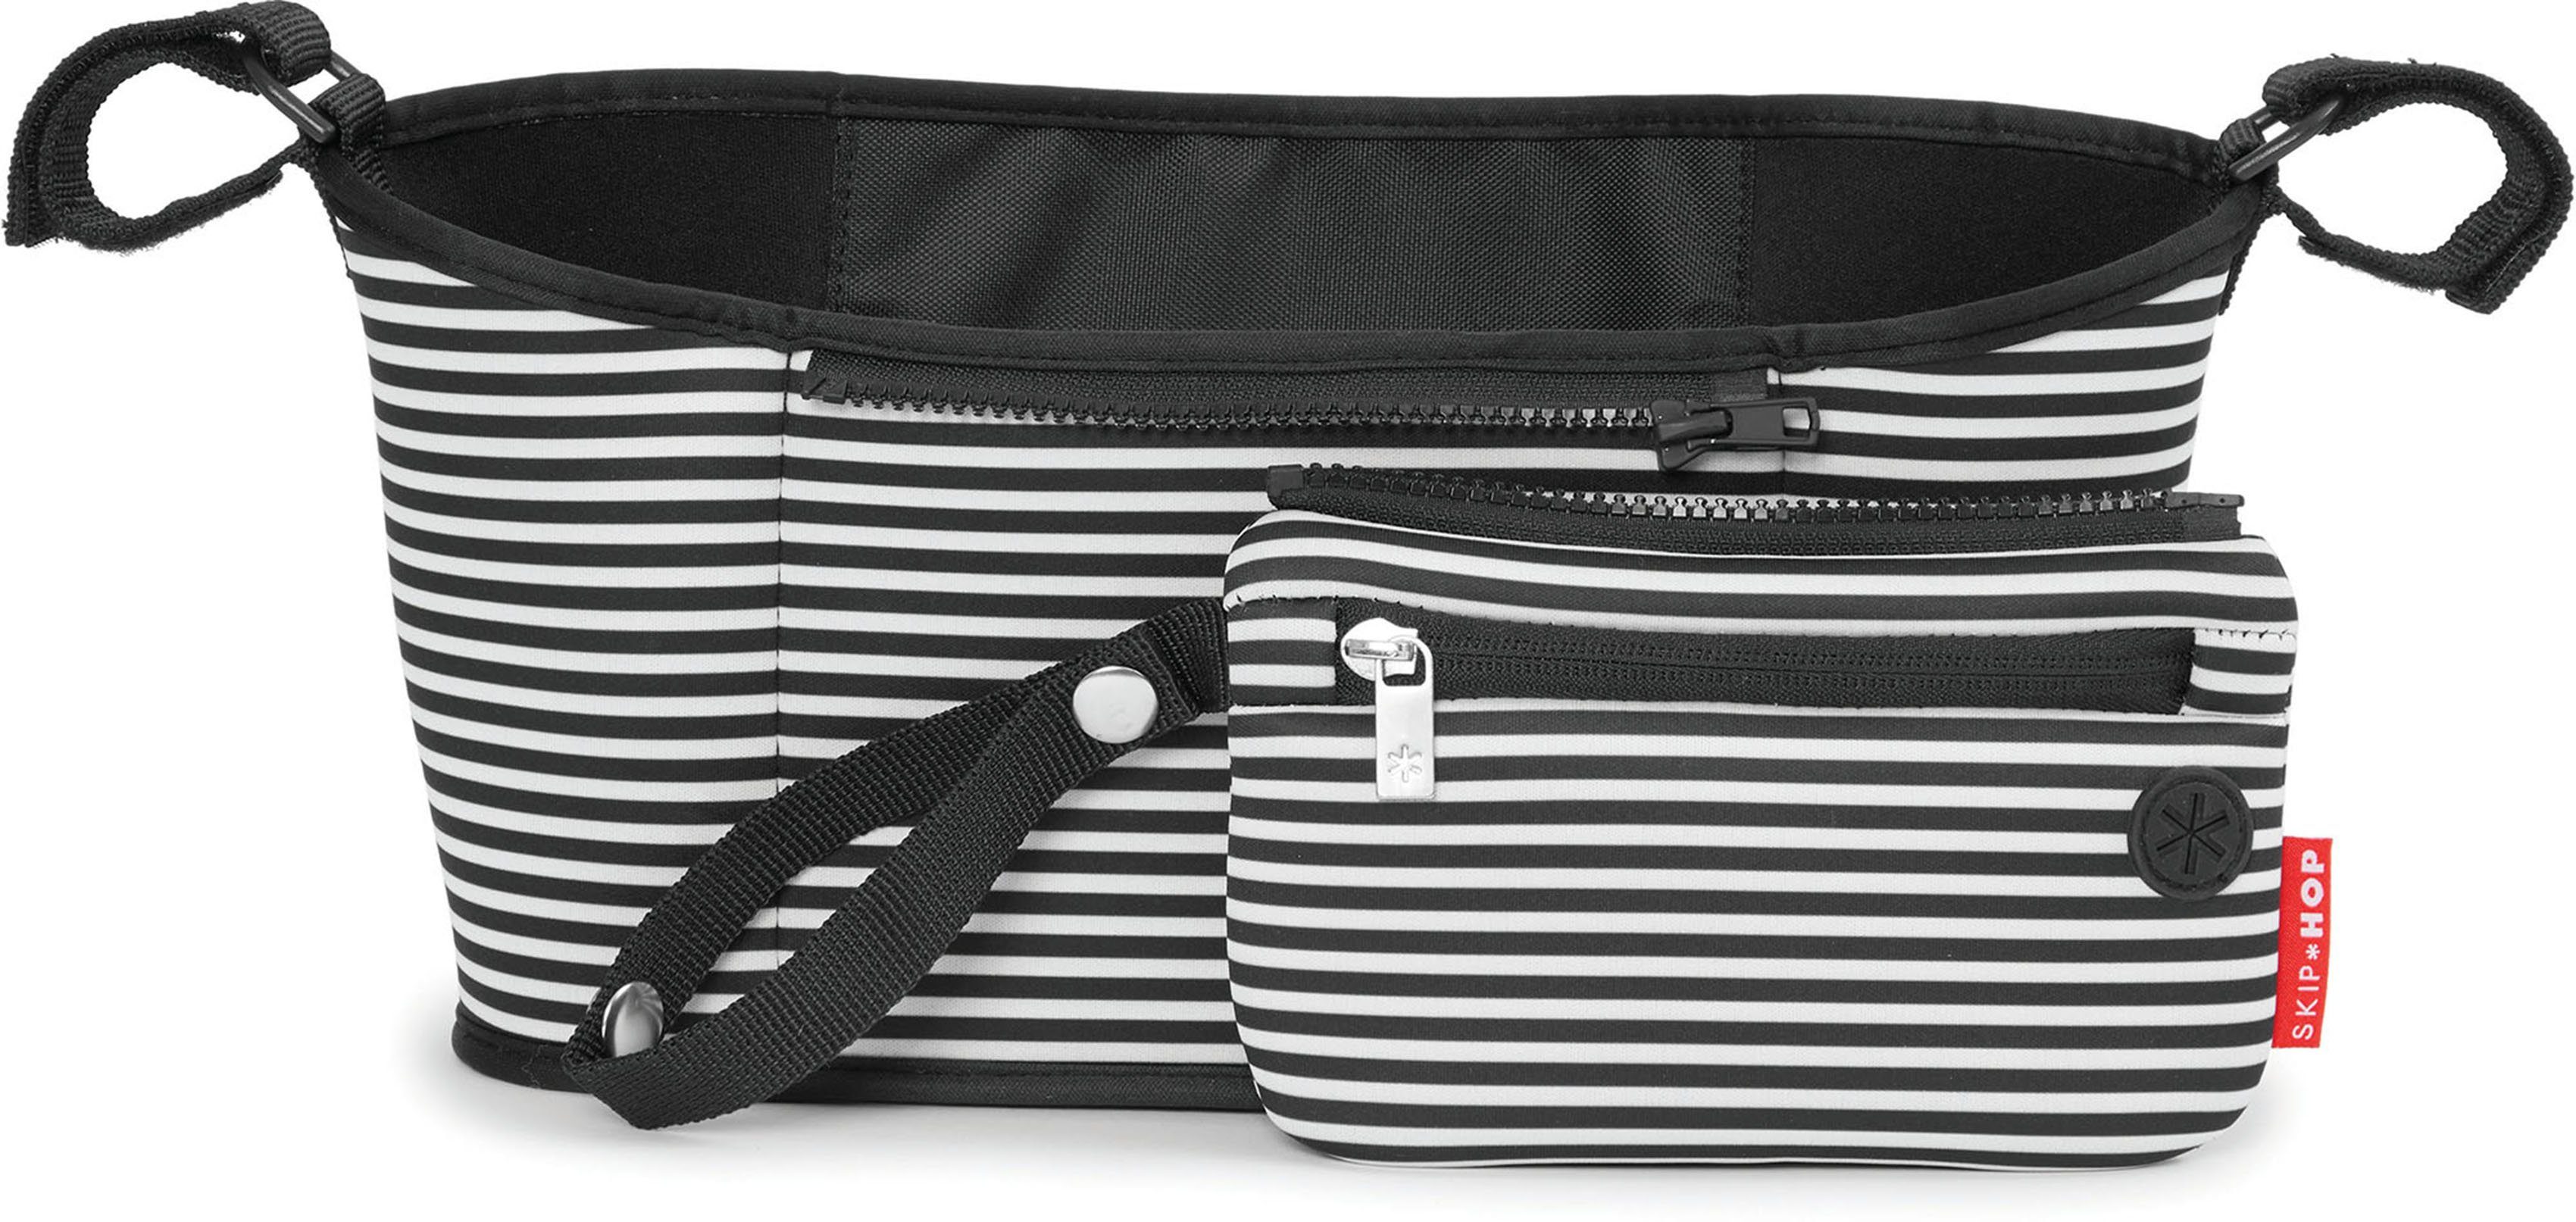 Skip Hop Kinderwagen-Tasche Buggy Organizer, schwarz/weiß, Abnehmbare  Reißverschlusstasche mit Handgelenksschlaufe für Wertsachen